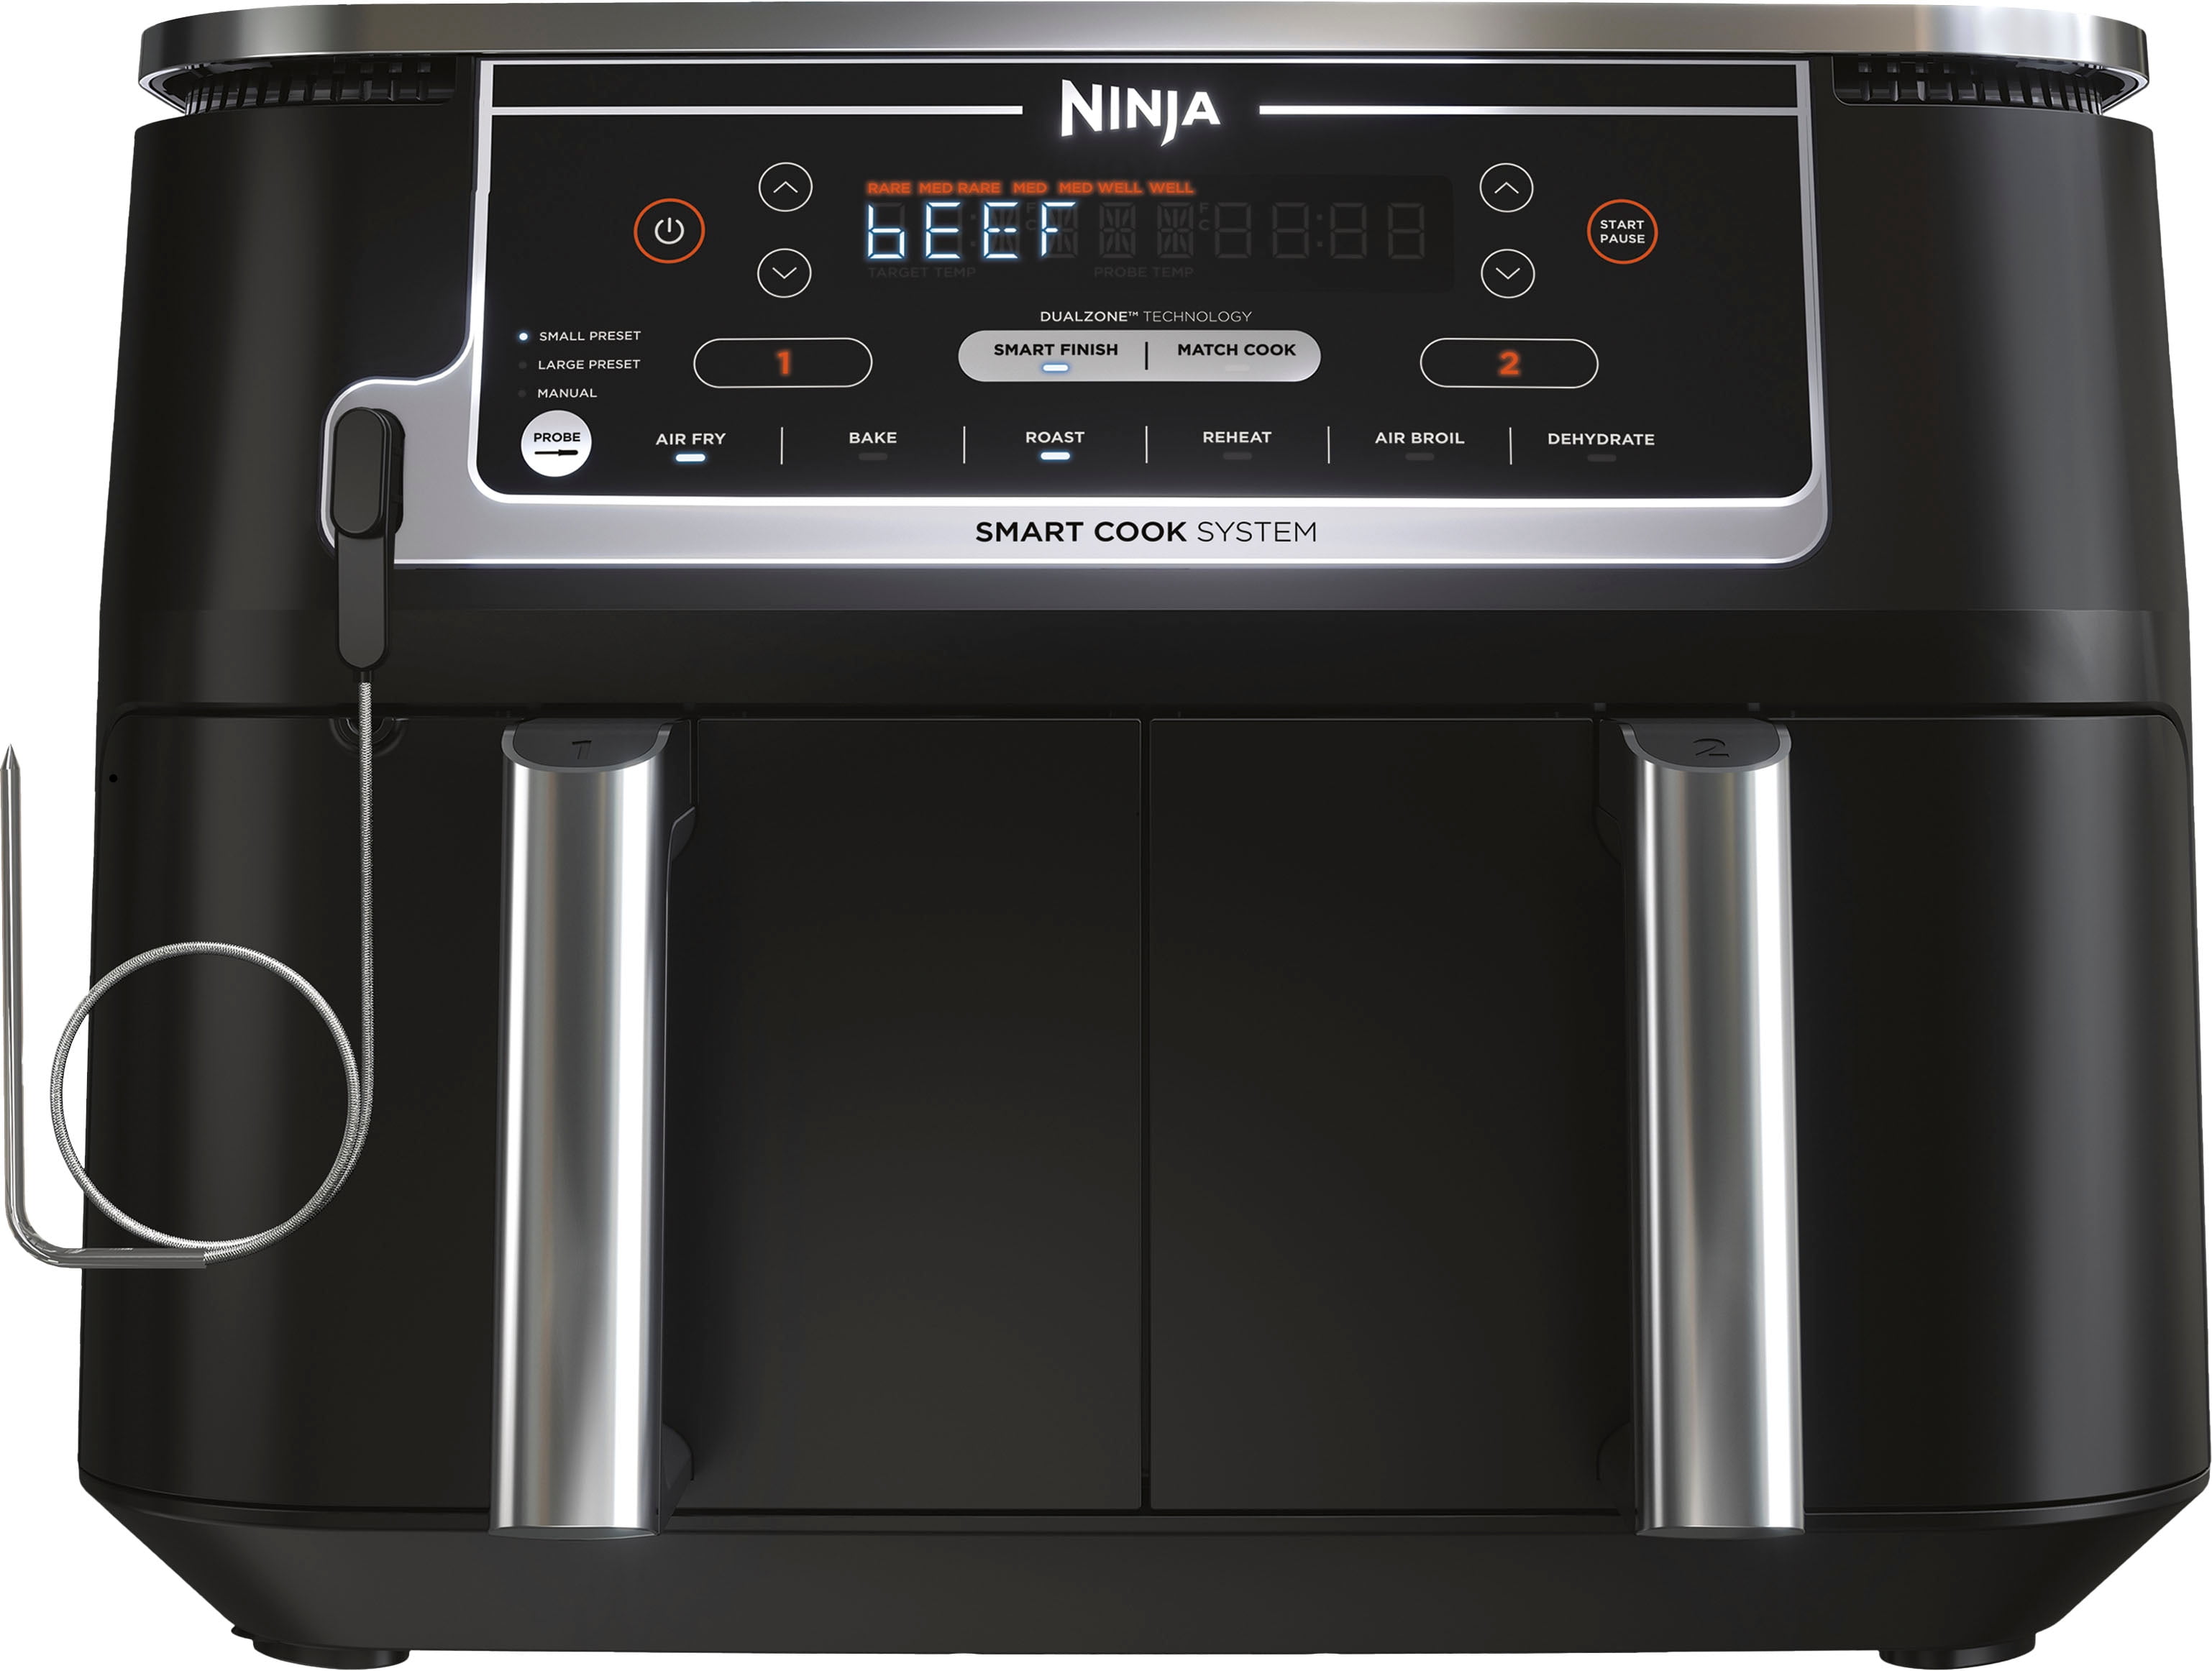 Air Fryer Accessories Ninja Foodi Af300uk, Af400uk & 7.6l-9.5l Or Larger  Dual Air Fryers, Set Of 12 Including Pizza Pan, Racks, Egg Mold, Oil Spray  Bo